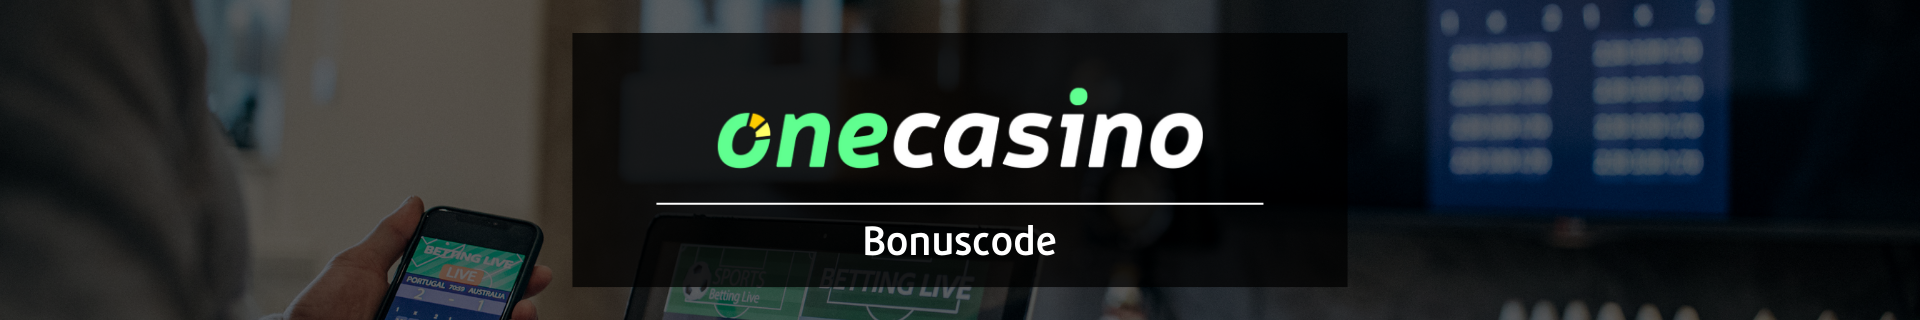 OneCasino bonuscode